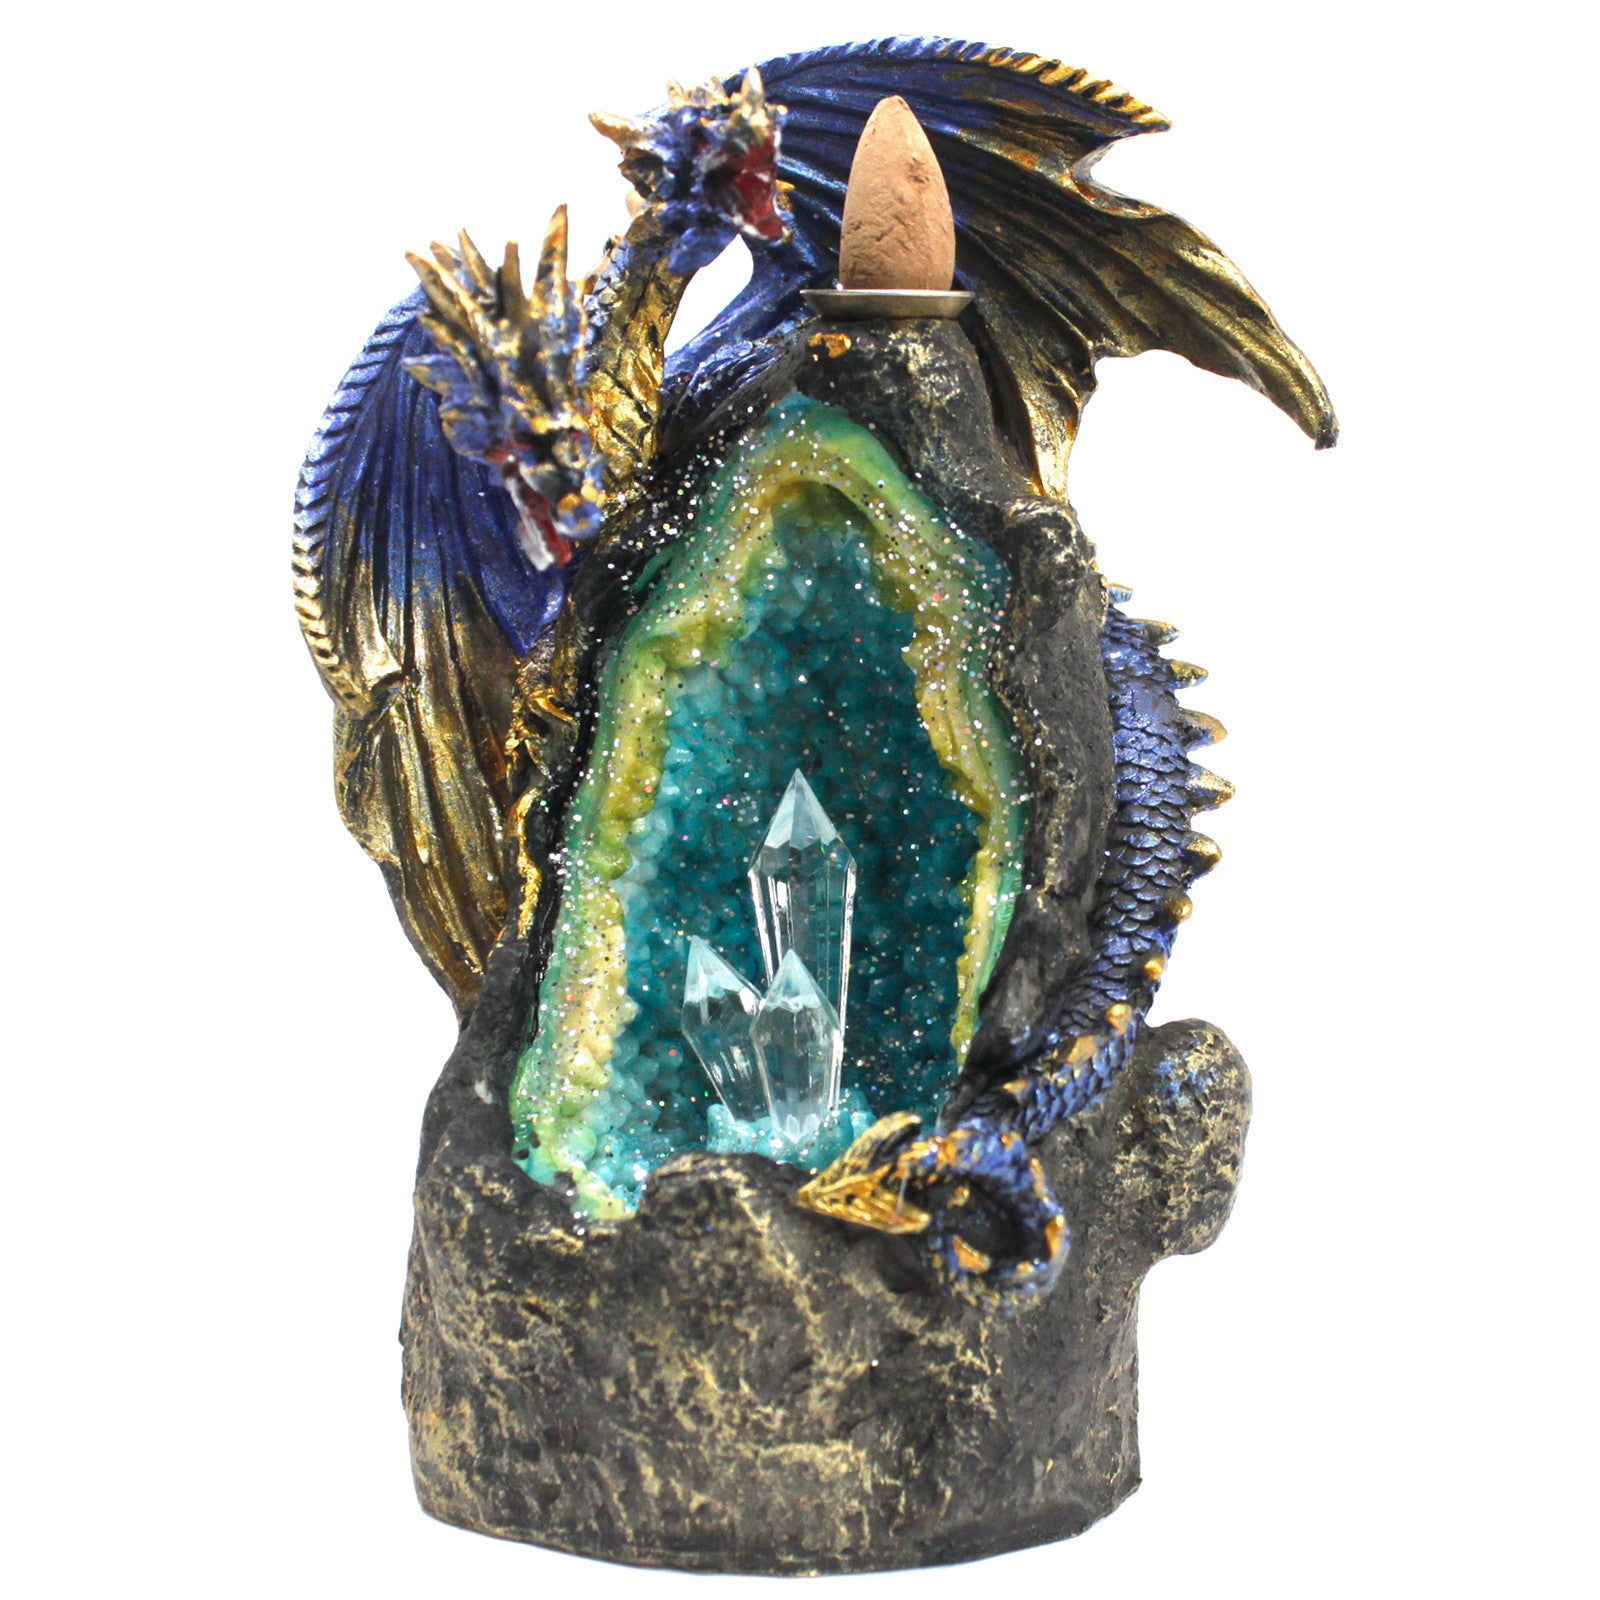 Back Flow Incense Burner - Dragon with Crystal Cave LED